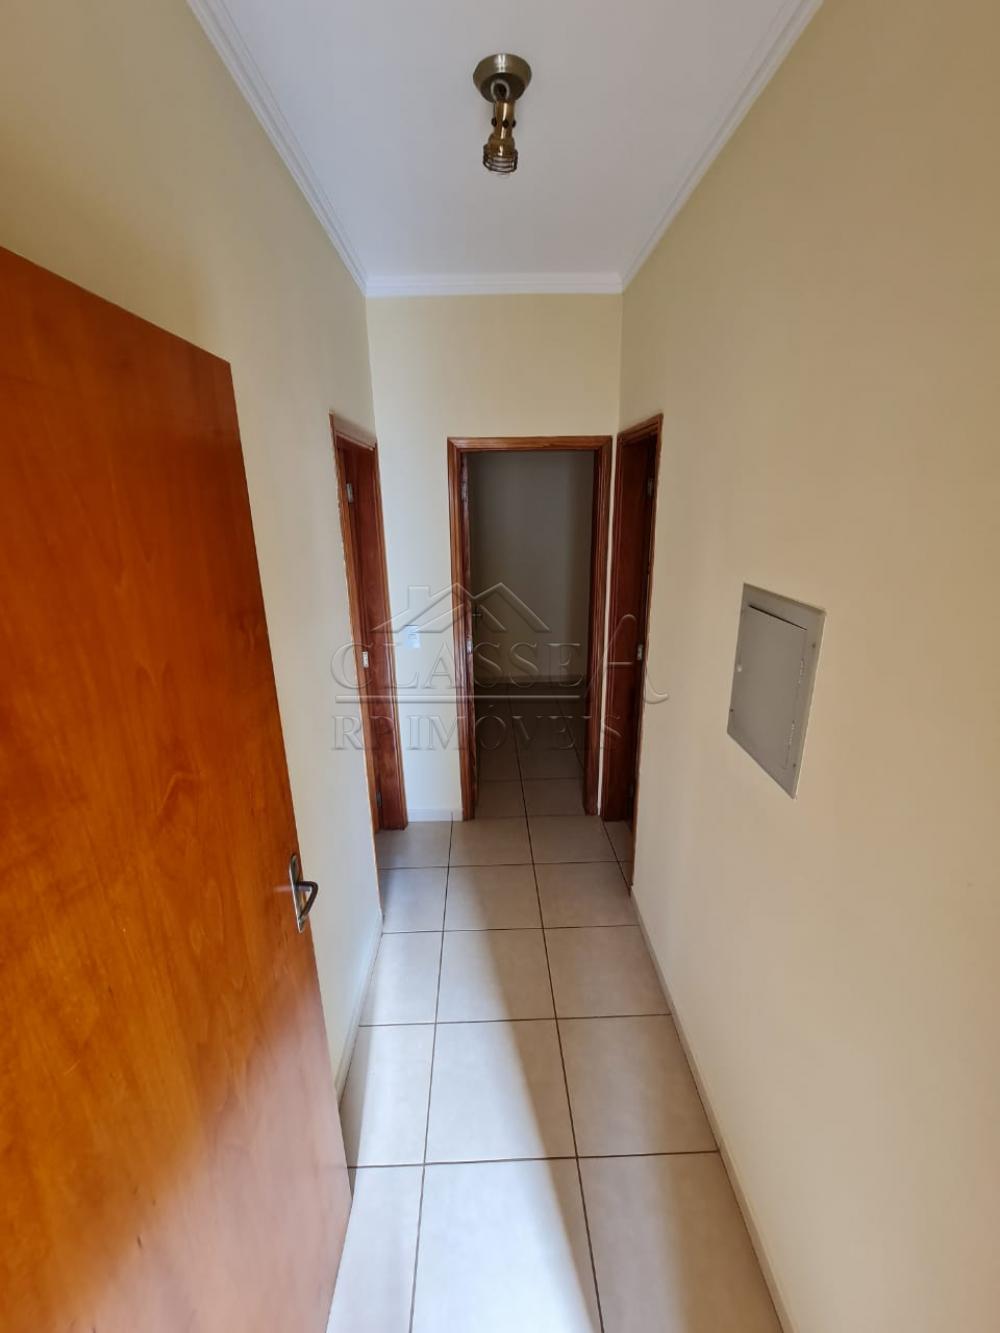 Alugar Apartamento / Padrão em Ribeirão Preto R$ 2.500,00 - Foto 6